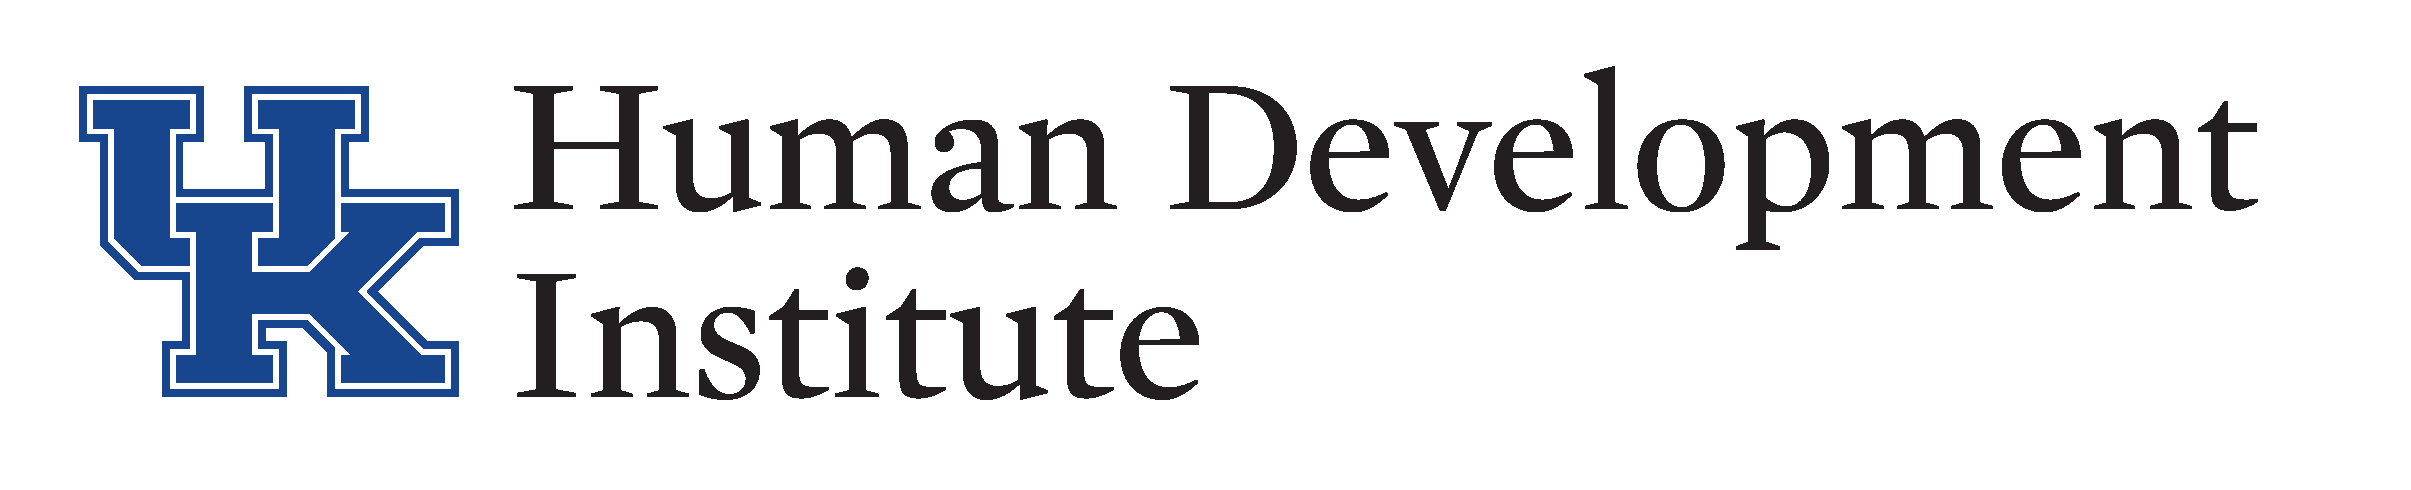 UK HDI logo